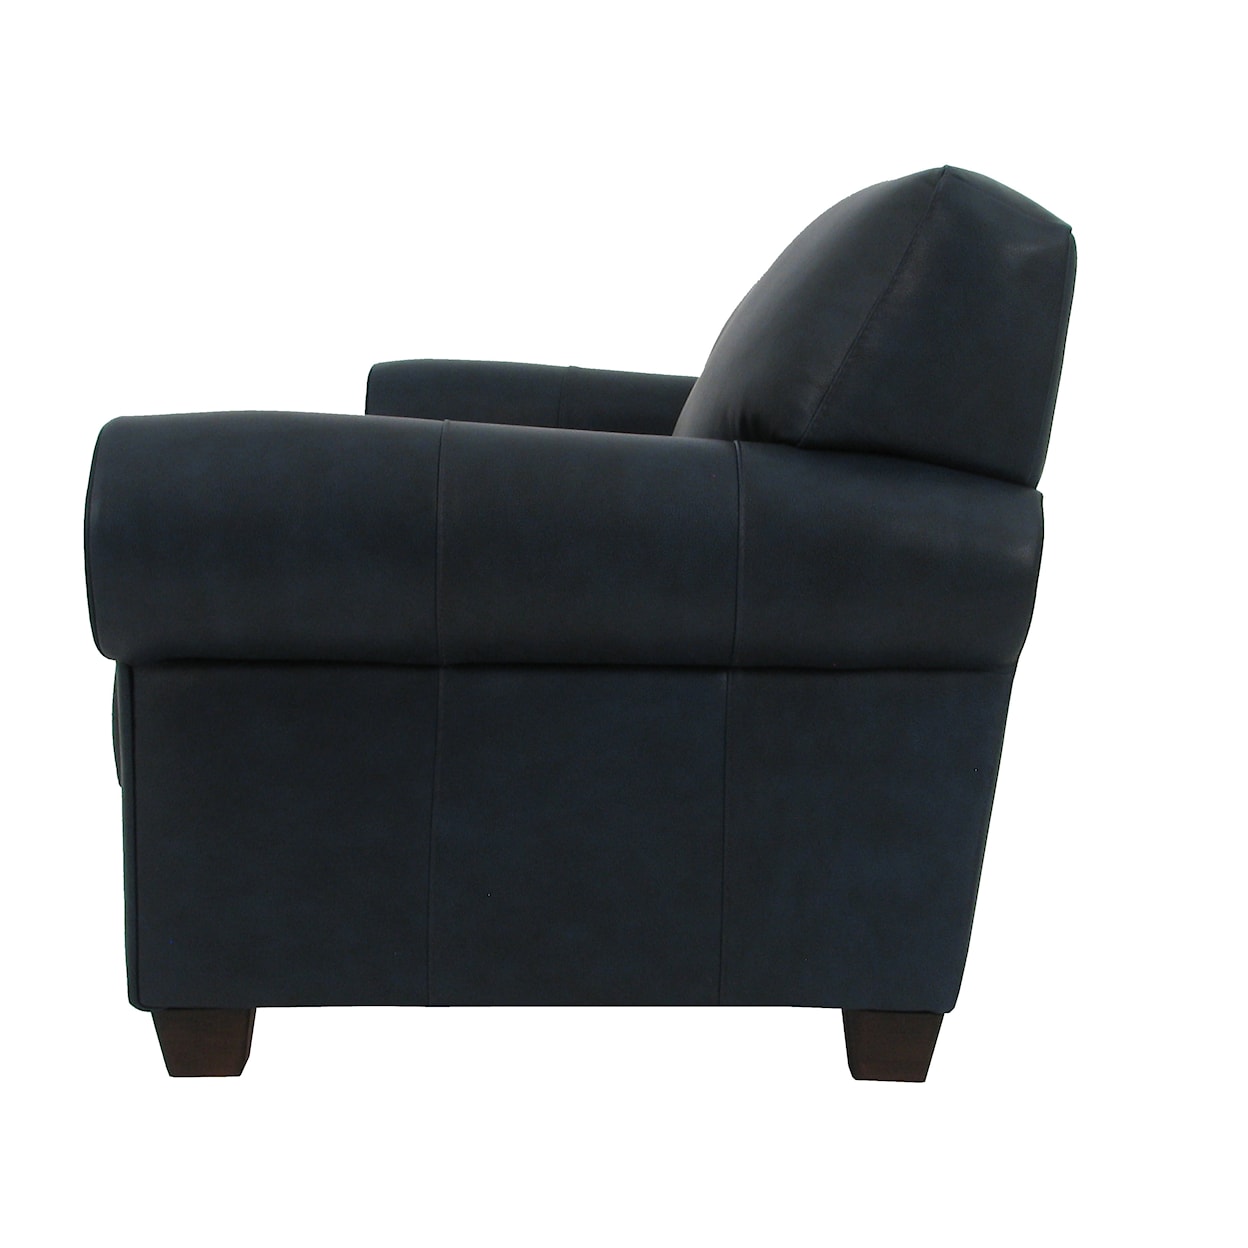 Virginia Furniture Market Premium Leather 7751 Sofa